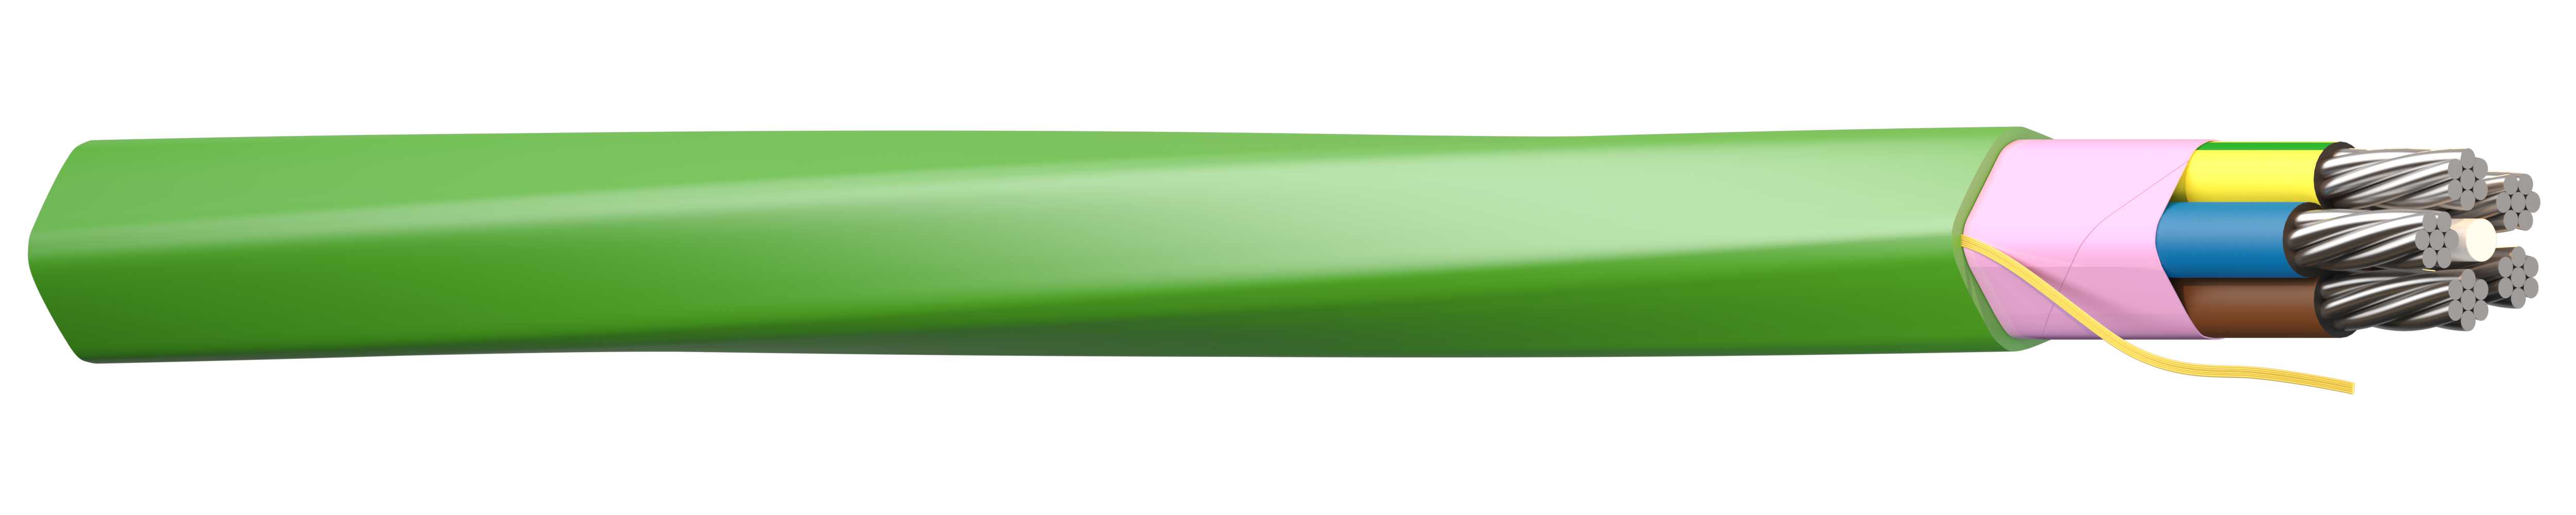 Draka - Prolight veglys kabel 5G50mm2 Grønn